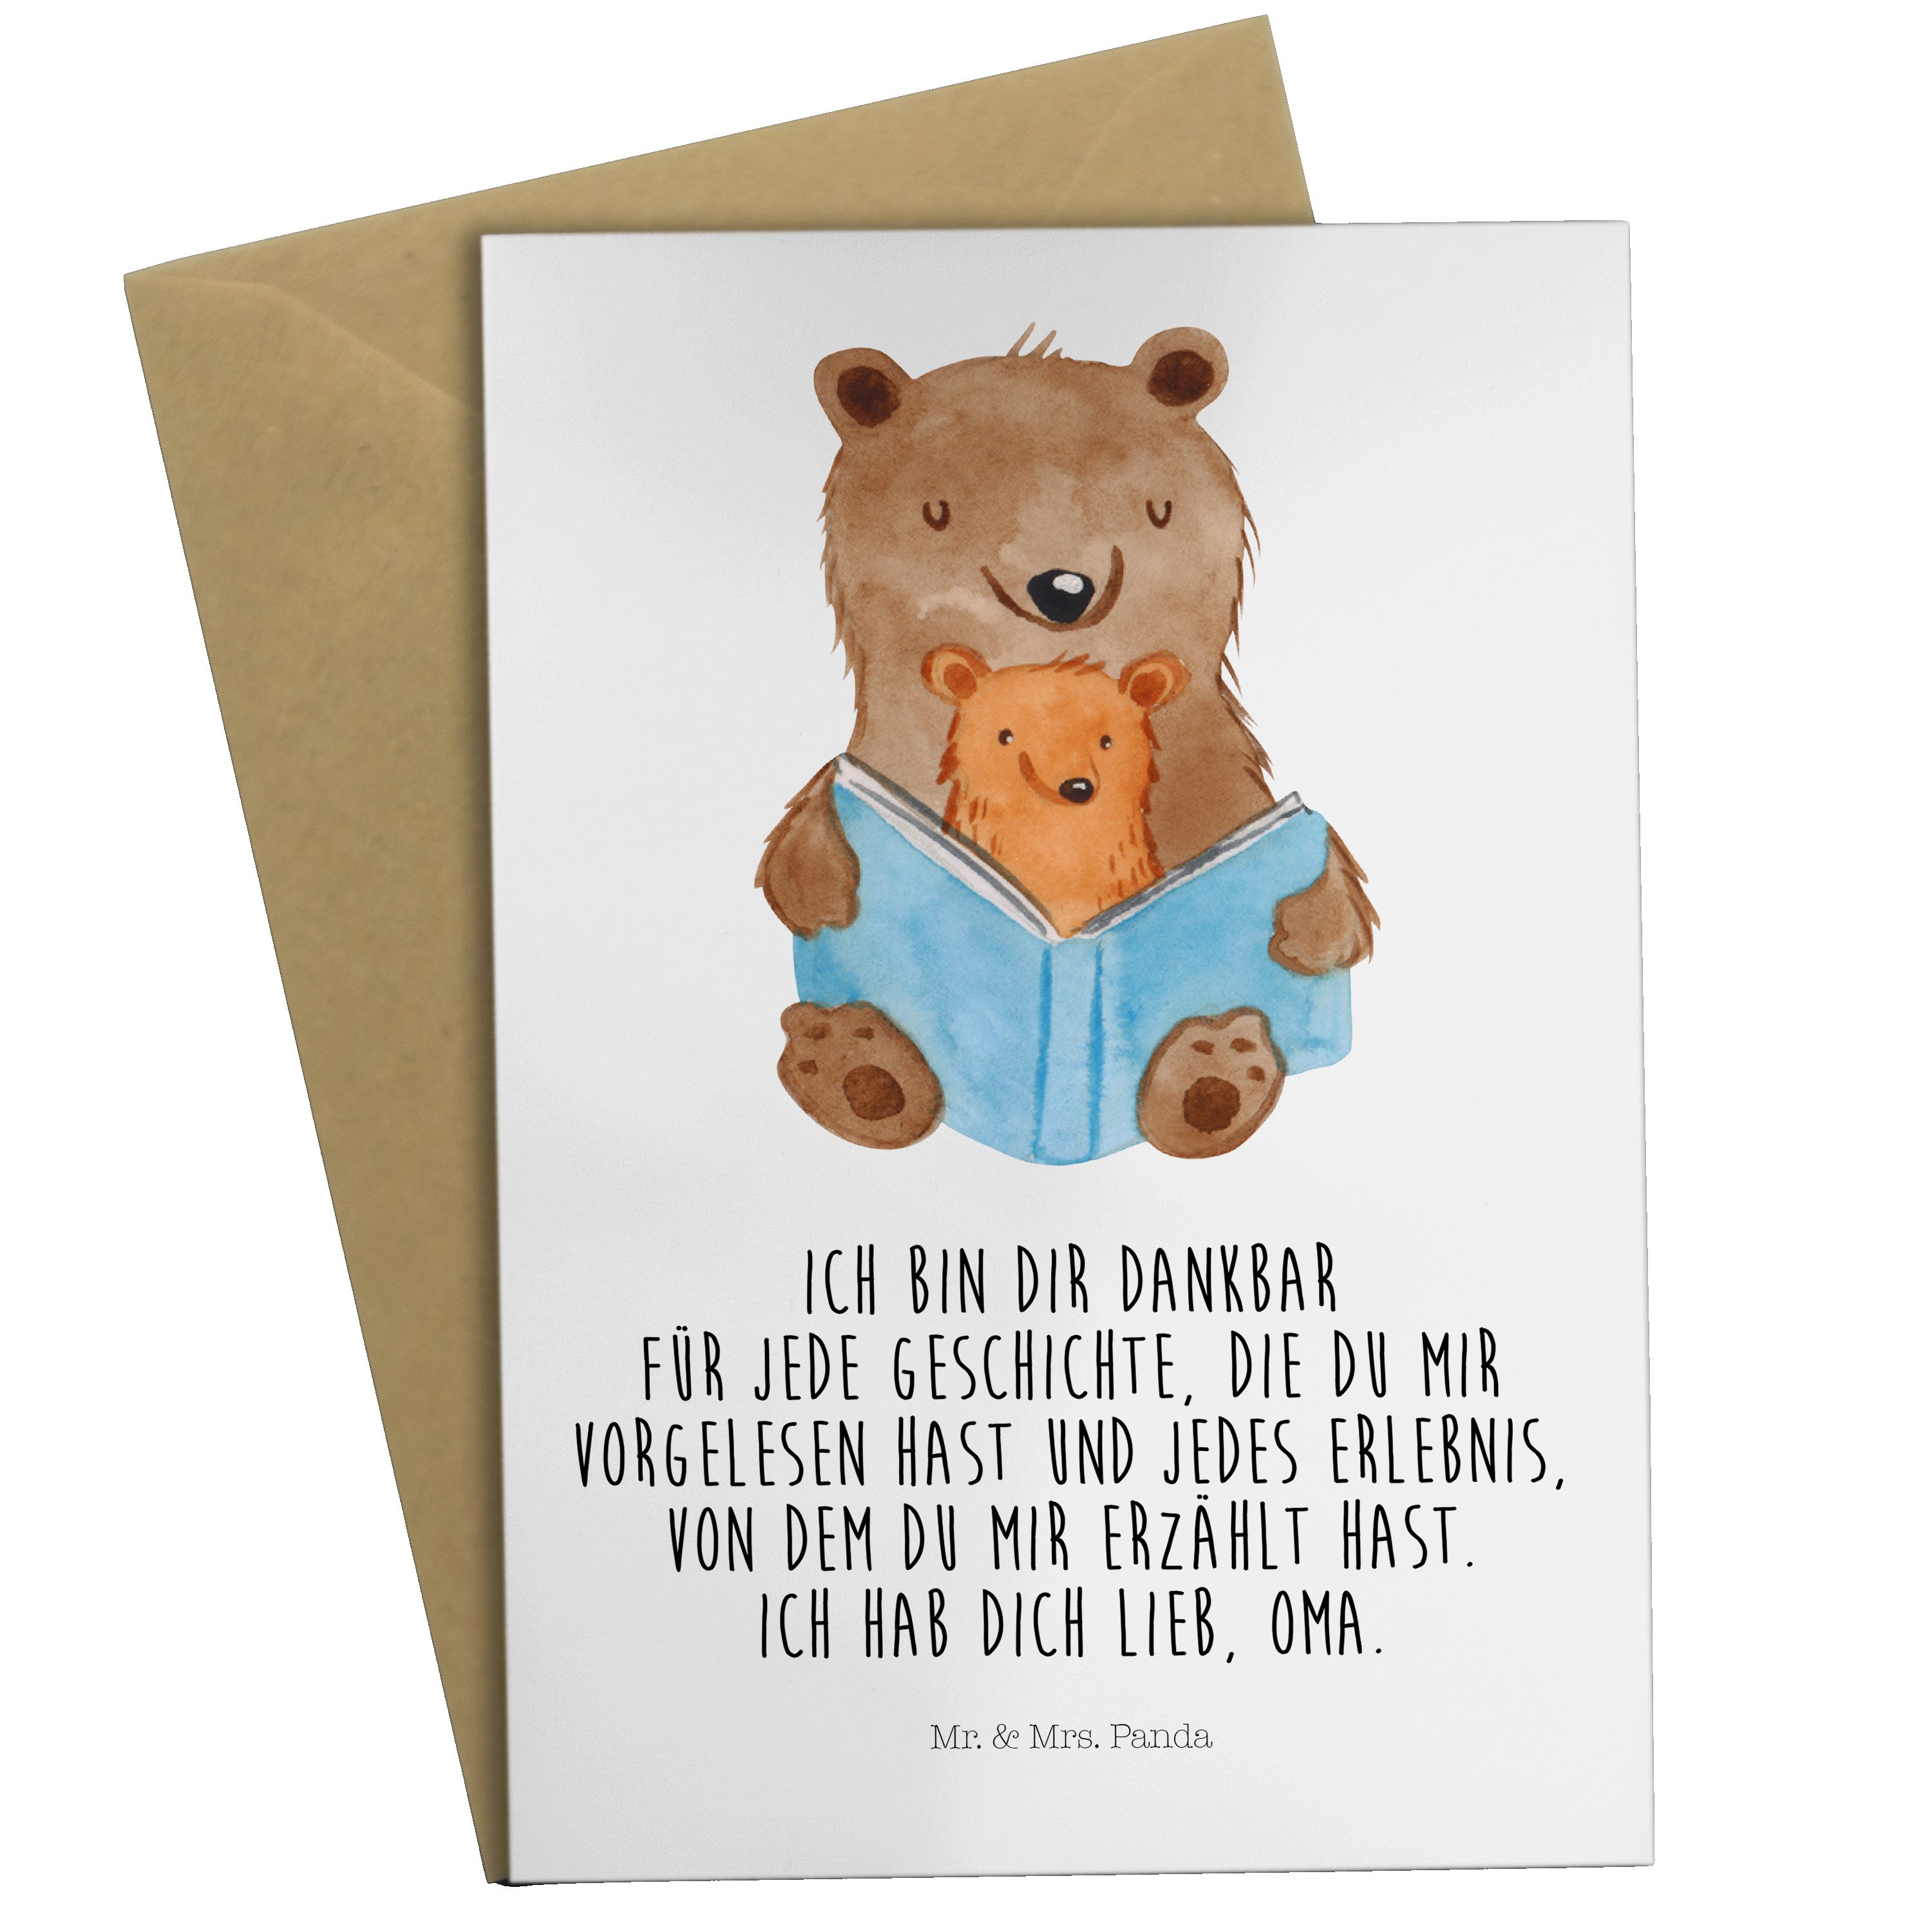 Mr. & - Karte, Hochzeitskarte, Panda Bären Geschichten Geschenk, Grußkarte Oma Buch Mrs. - Weiß